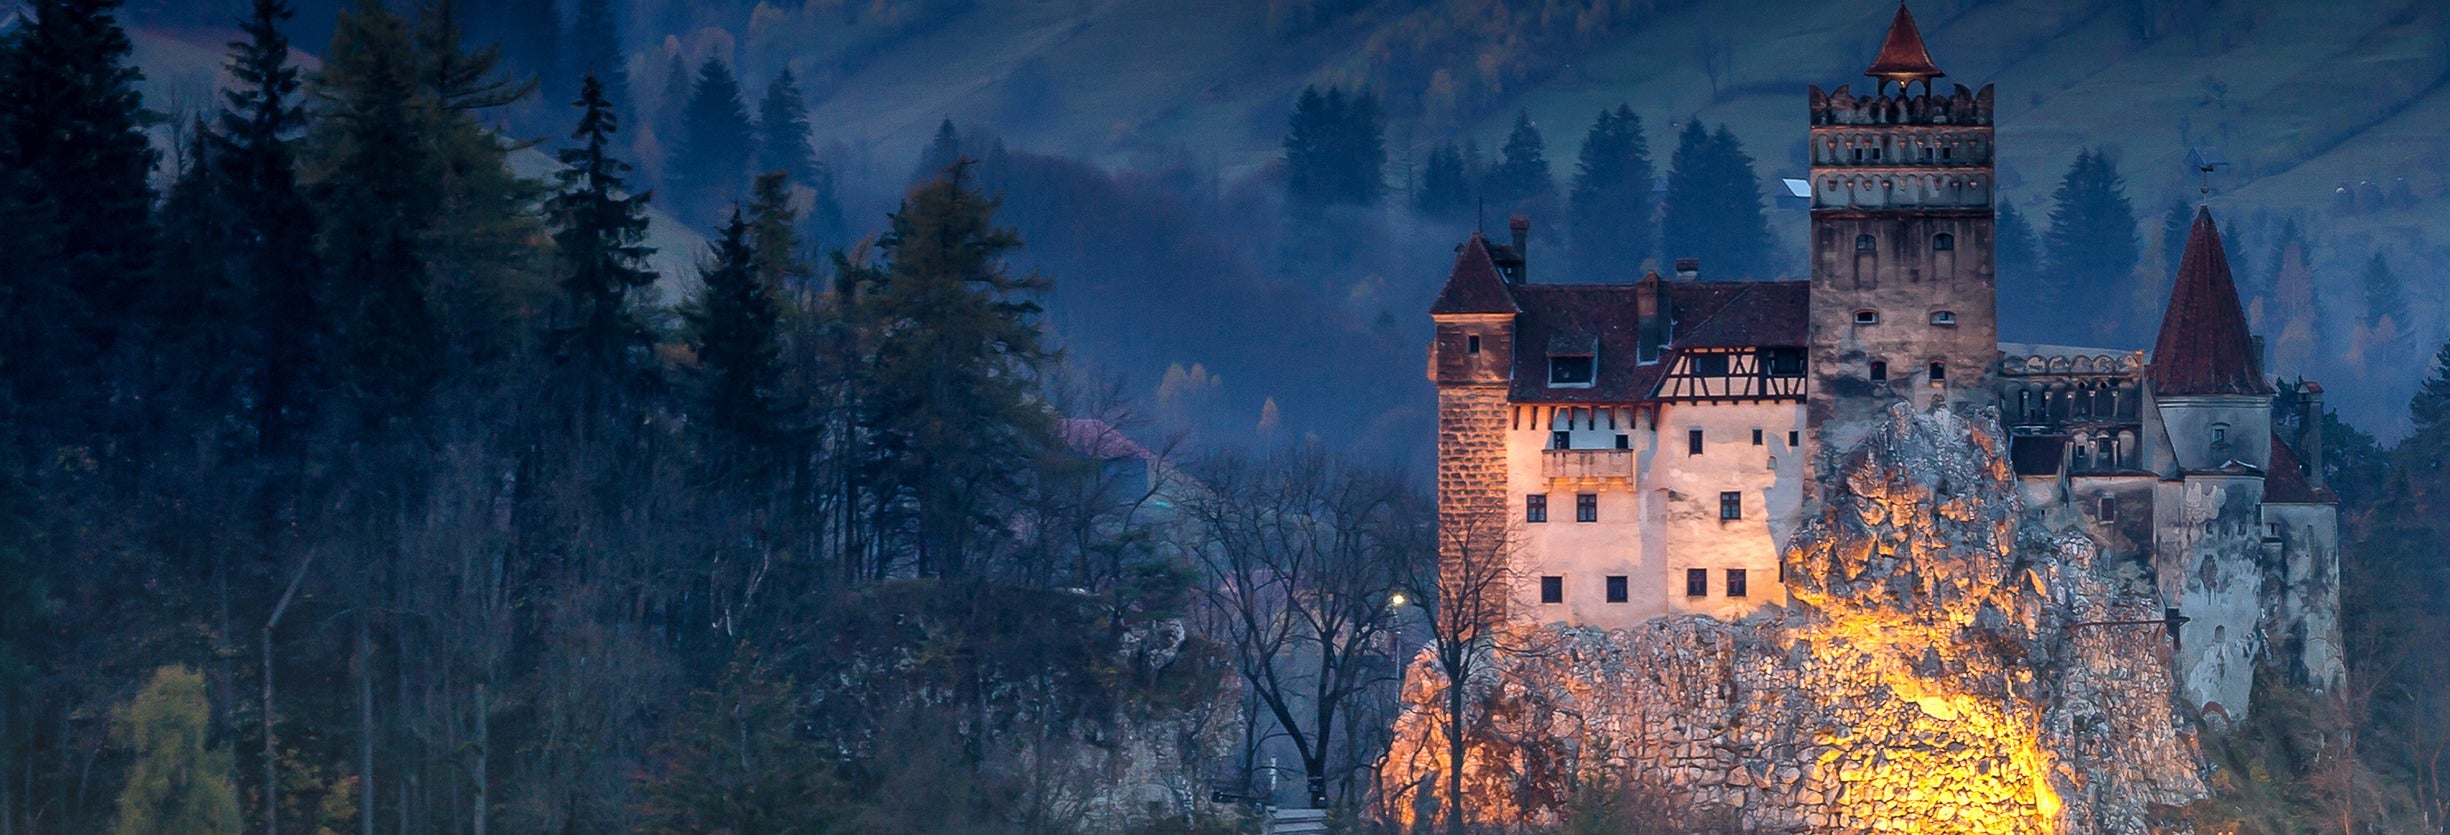 Tour de 2 dias pela Transilvânia + Festa de Halloween no castelo do Drácula